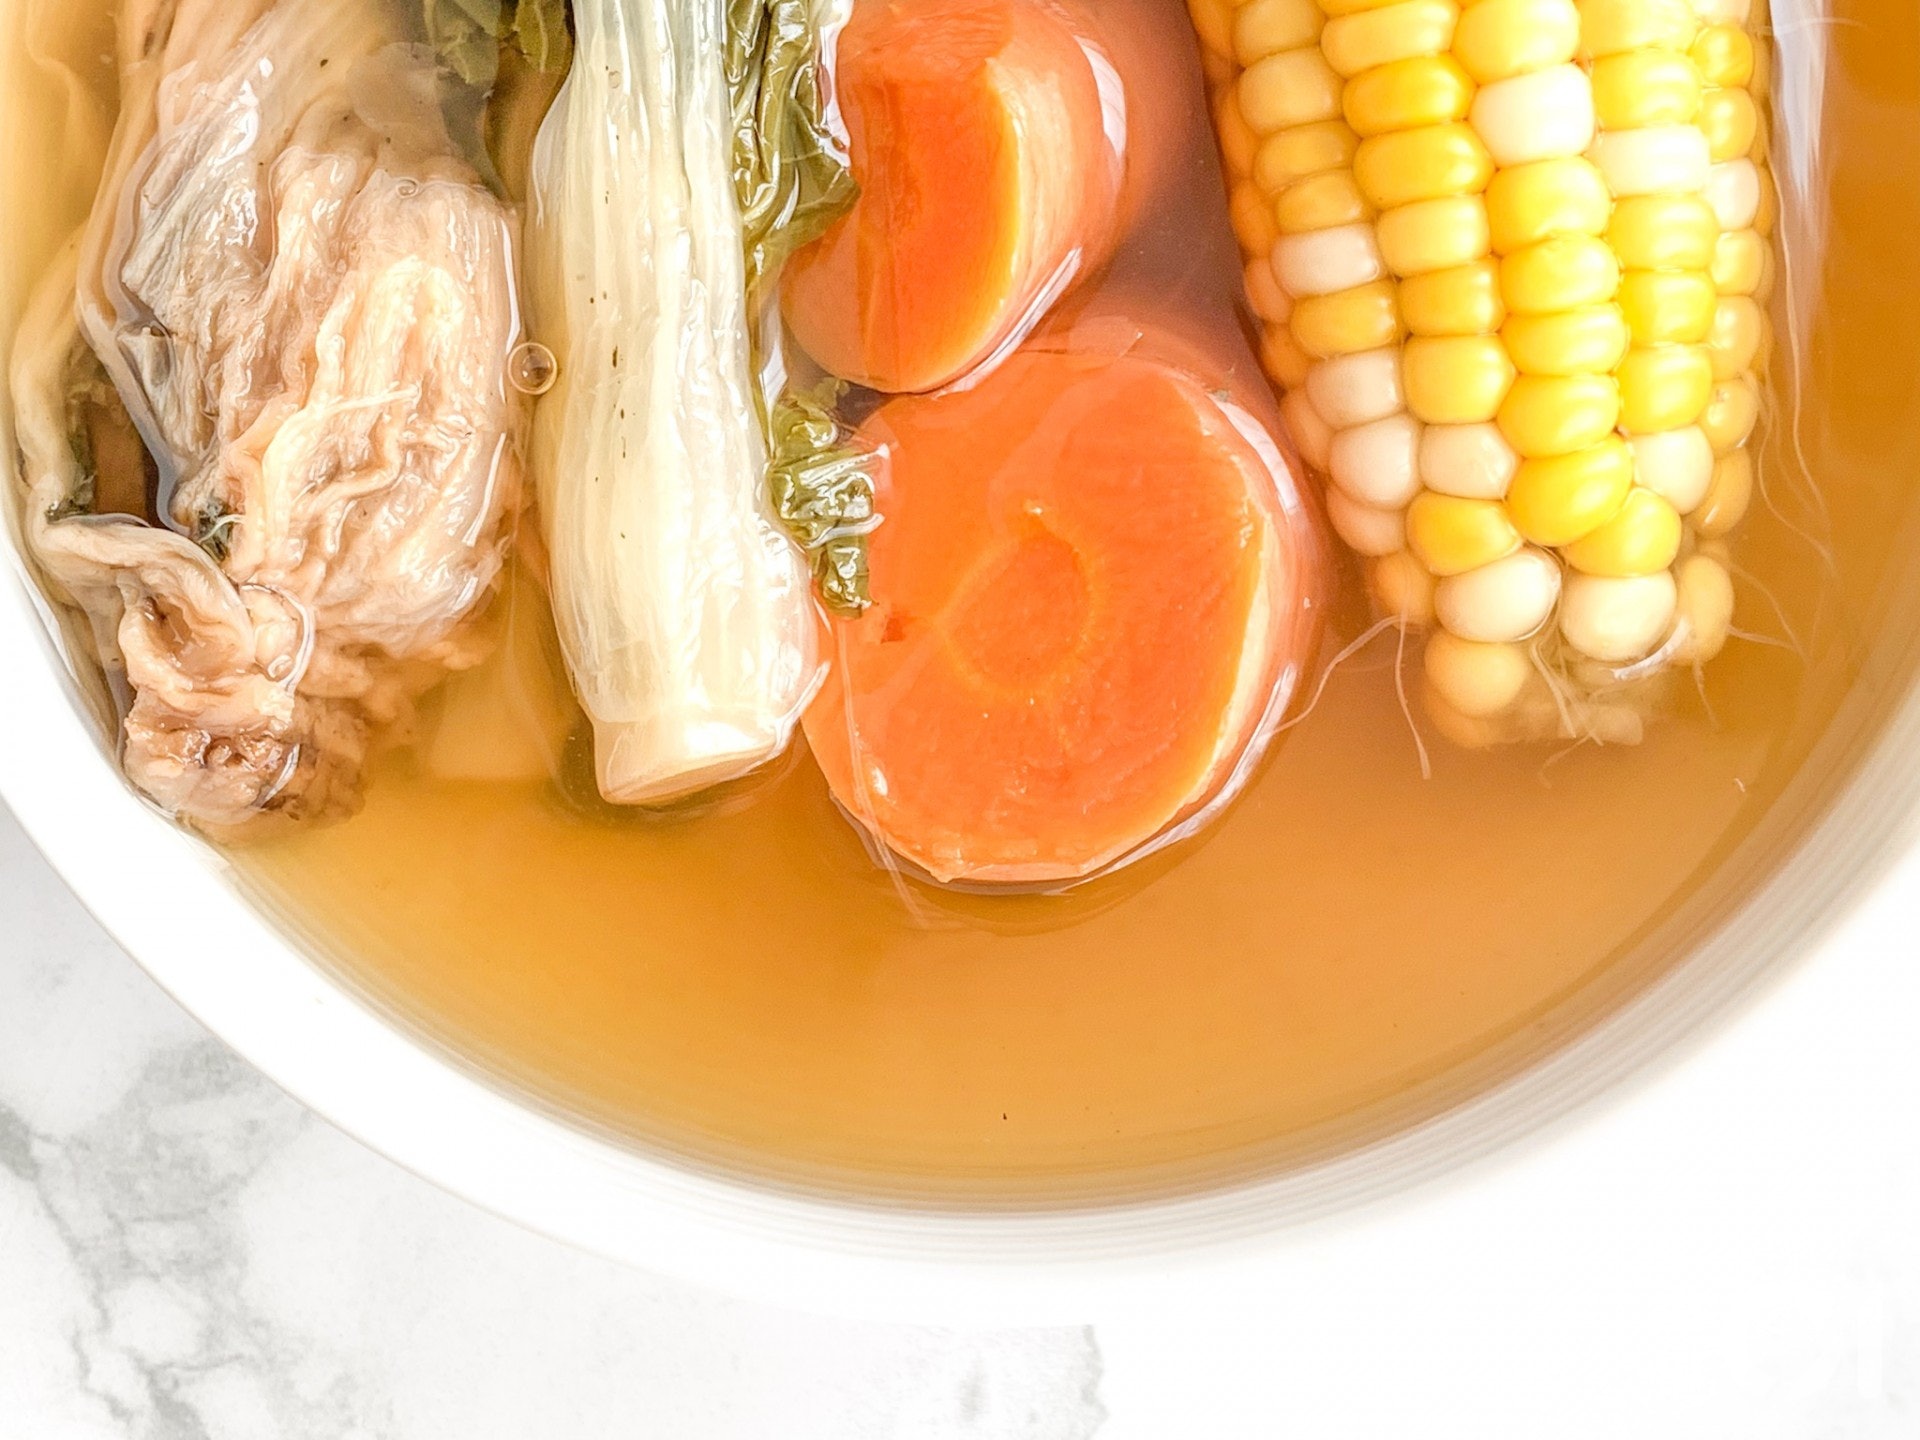 金銀菜粟米湯味道清甜，湯色淳厚。由於食材屬性偏涼，加幾片薑可中和寒性。脾胃虛寒、容易腹瀉腹痛的人士慎服。